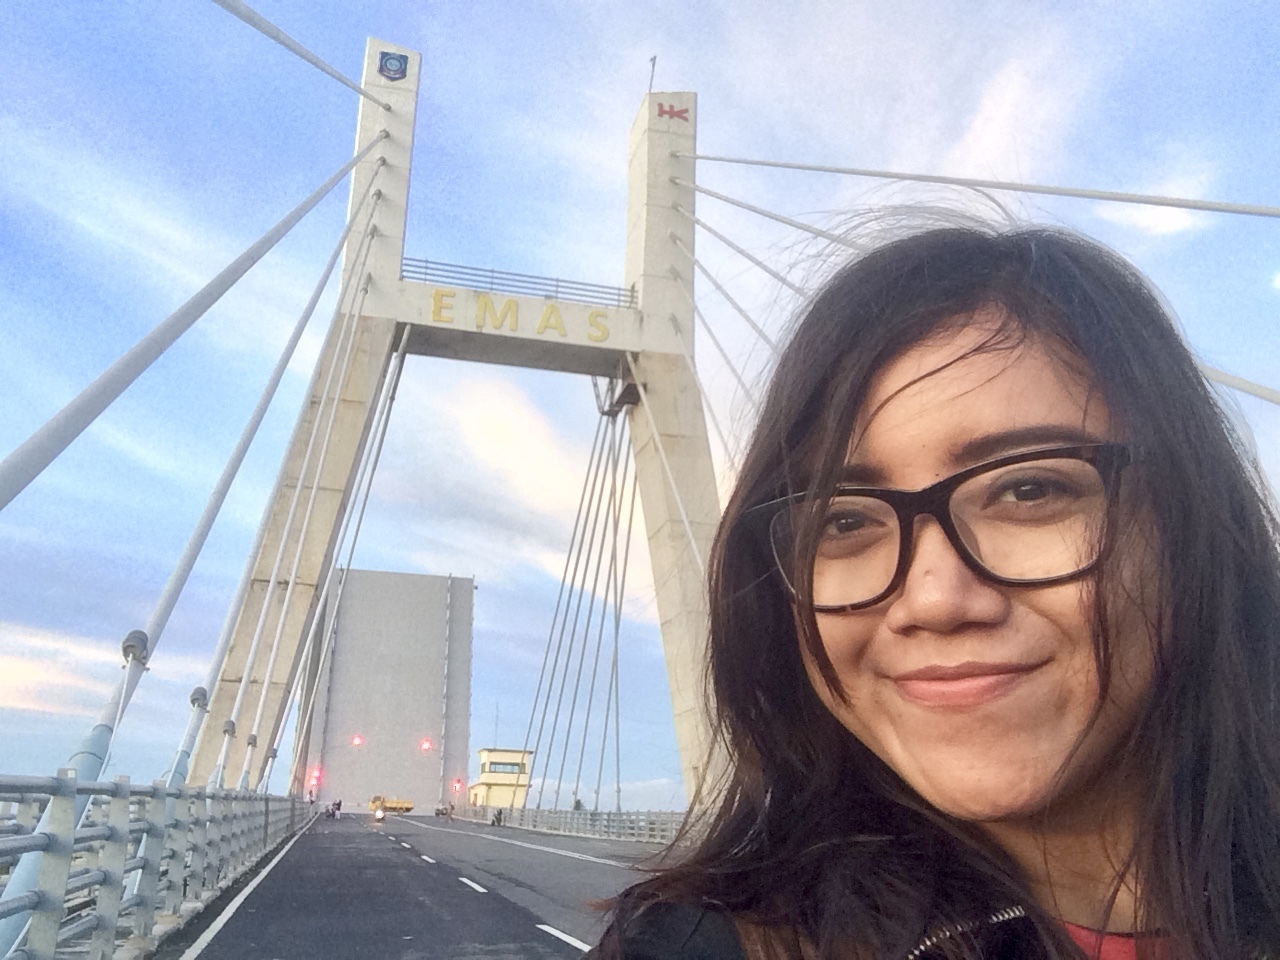 #BestCollection Selfie dengan Jembatan Emas kebanggan dan kepunyaan Indonesia